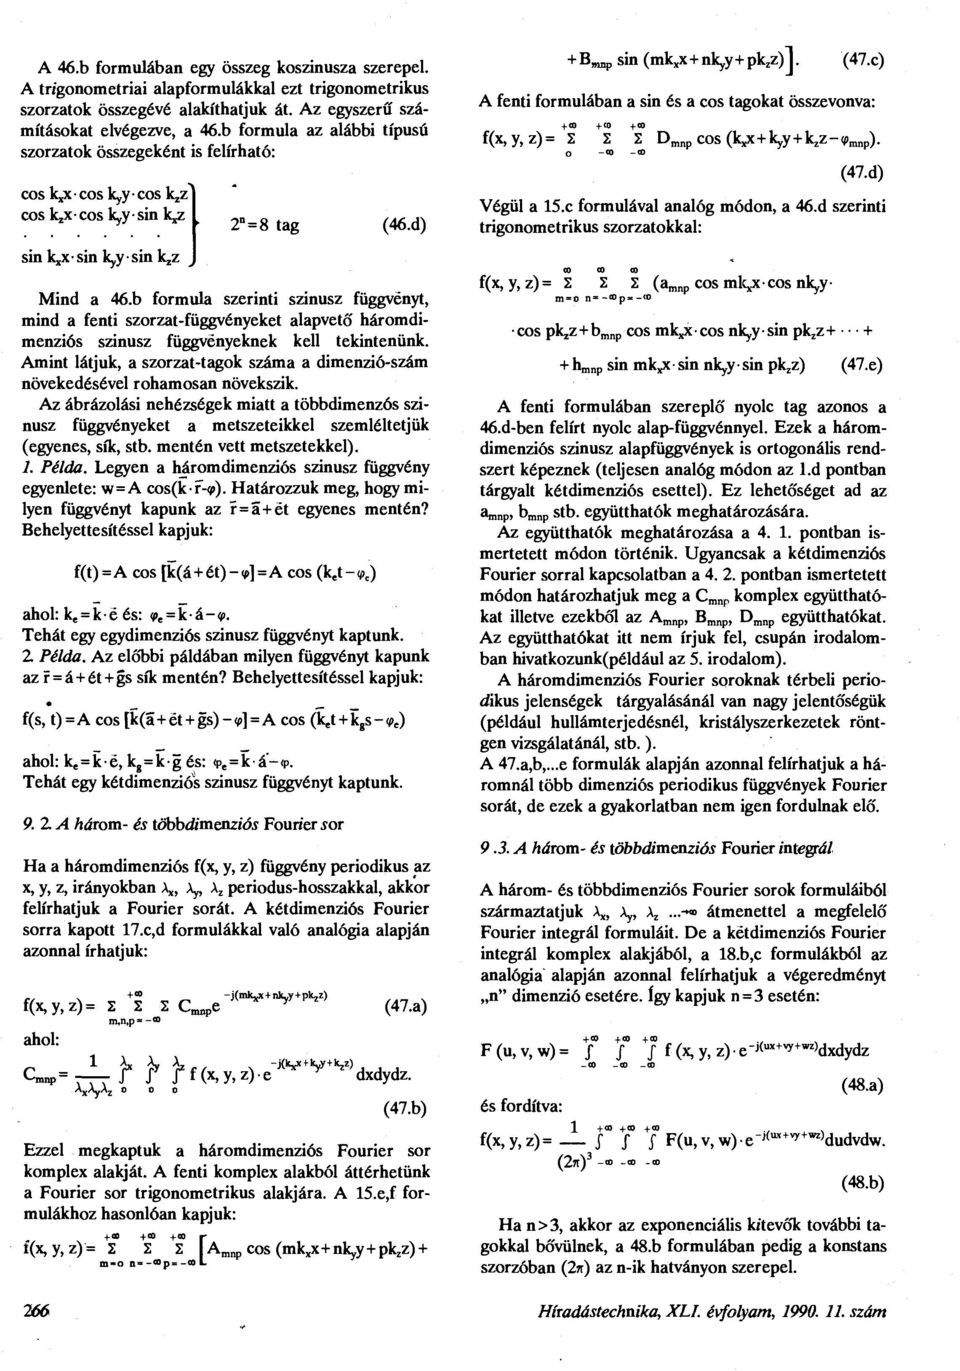 b formula szerinti szinusz függvényt, mind a fenti szorzat-függvényeket alapvető háromdimenziós szinusz függvényeknek kell tekintenünk.